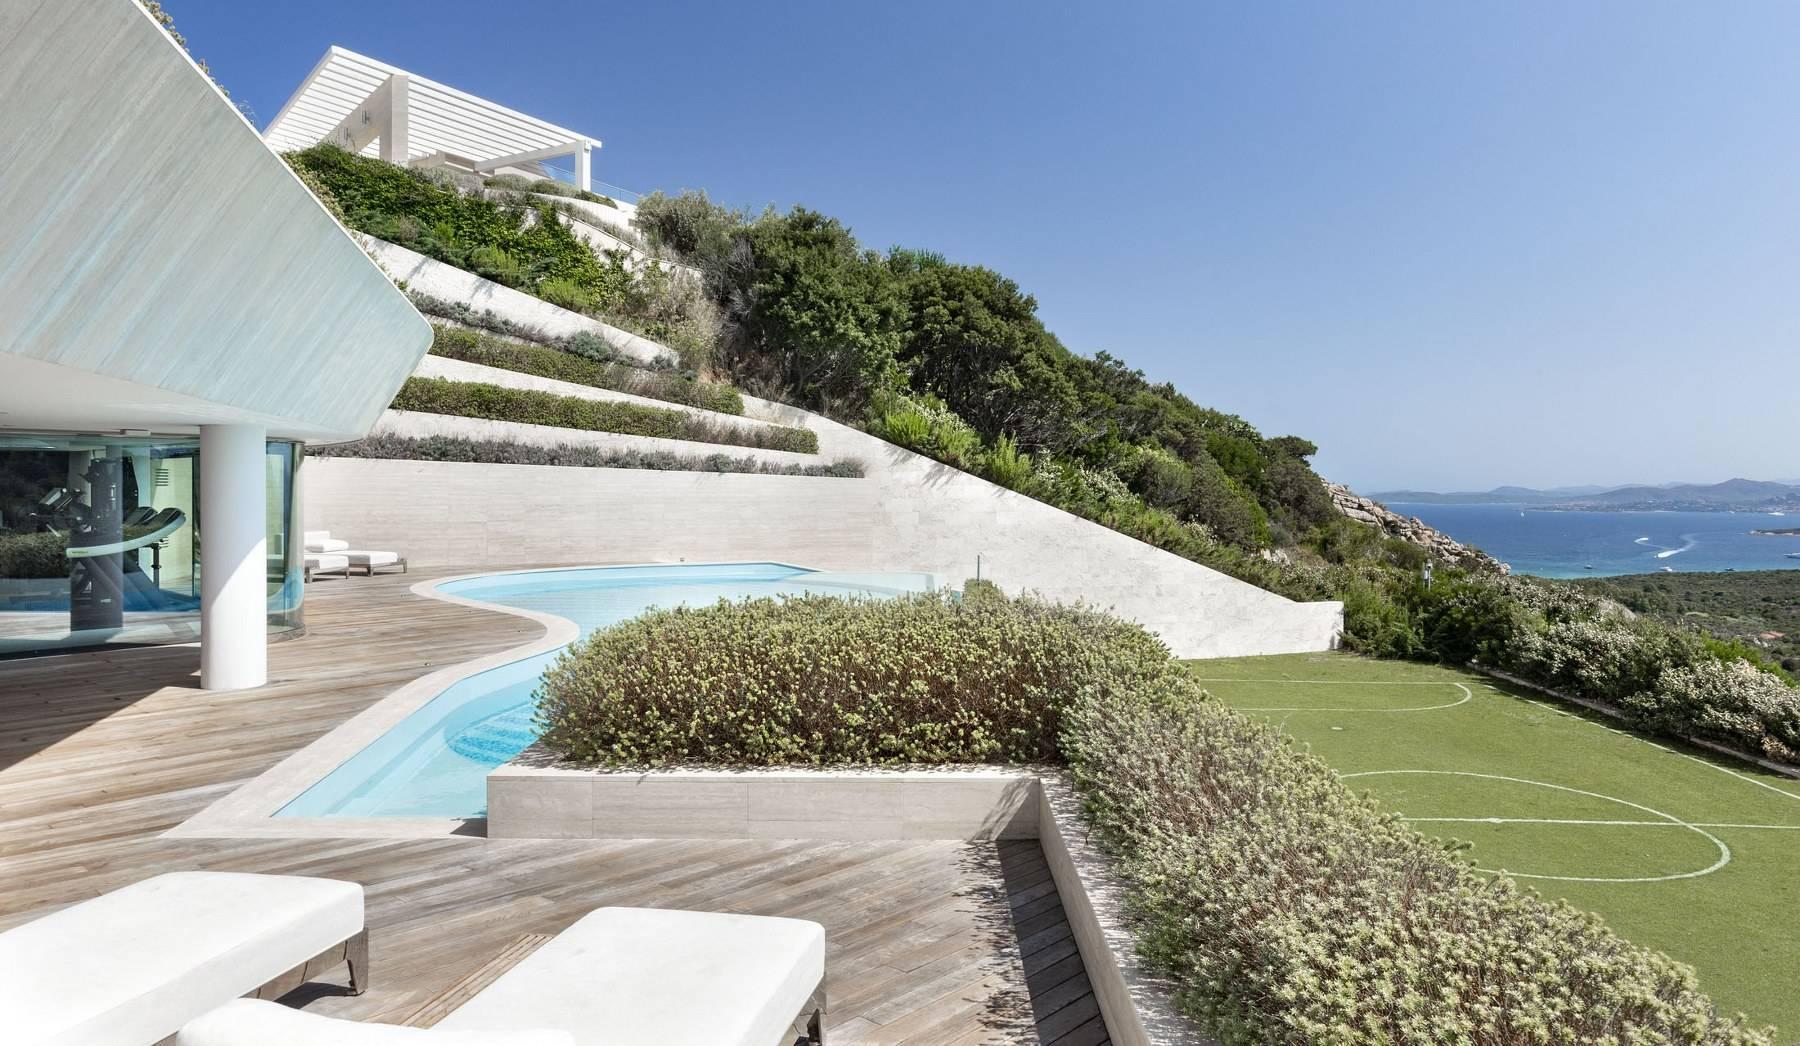 Prestigious and elegant villa located in the heart of the Costa Smeralda - 18